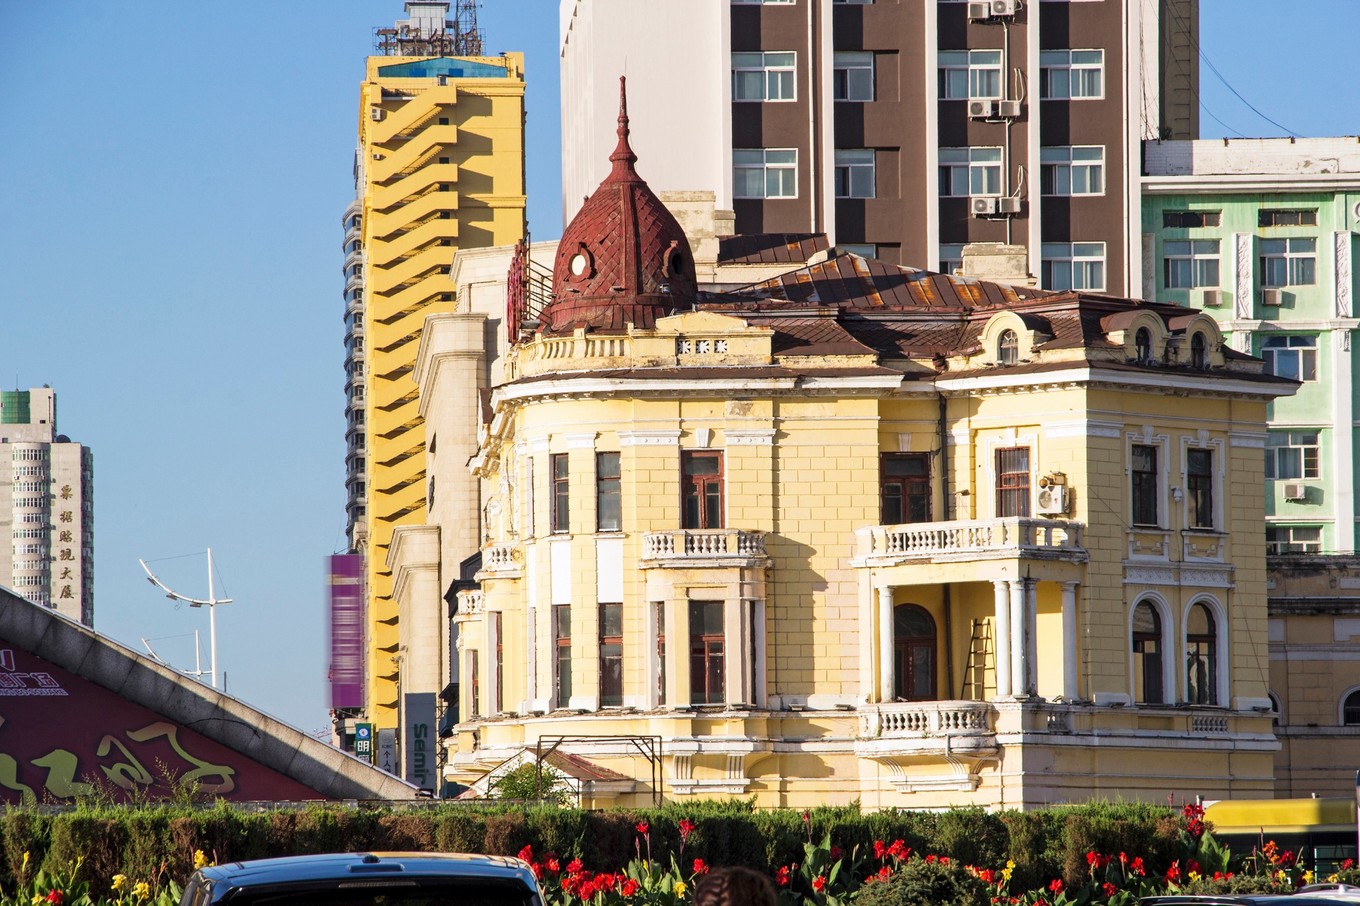 国内俄罗斯风情最浓厚的一座城市,大街上随处可见的俄式建筑